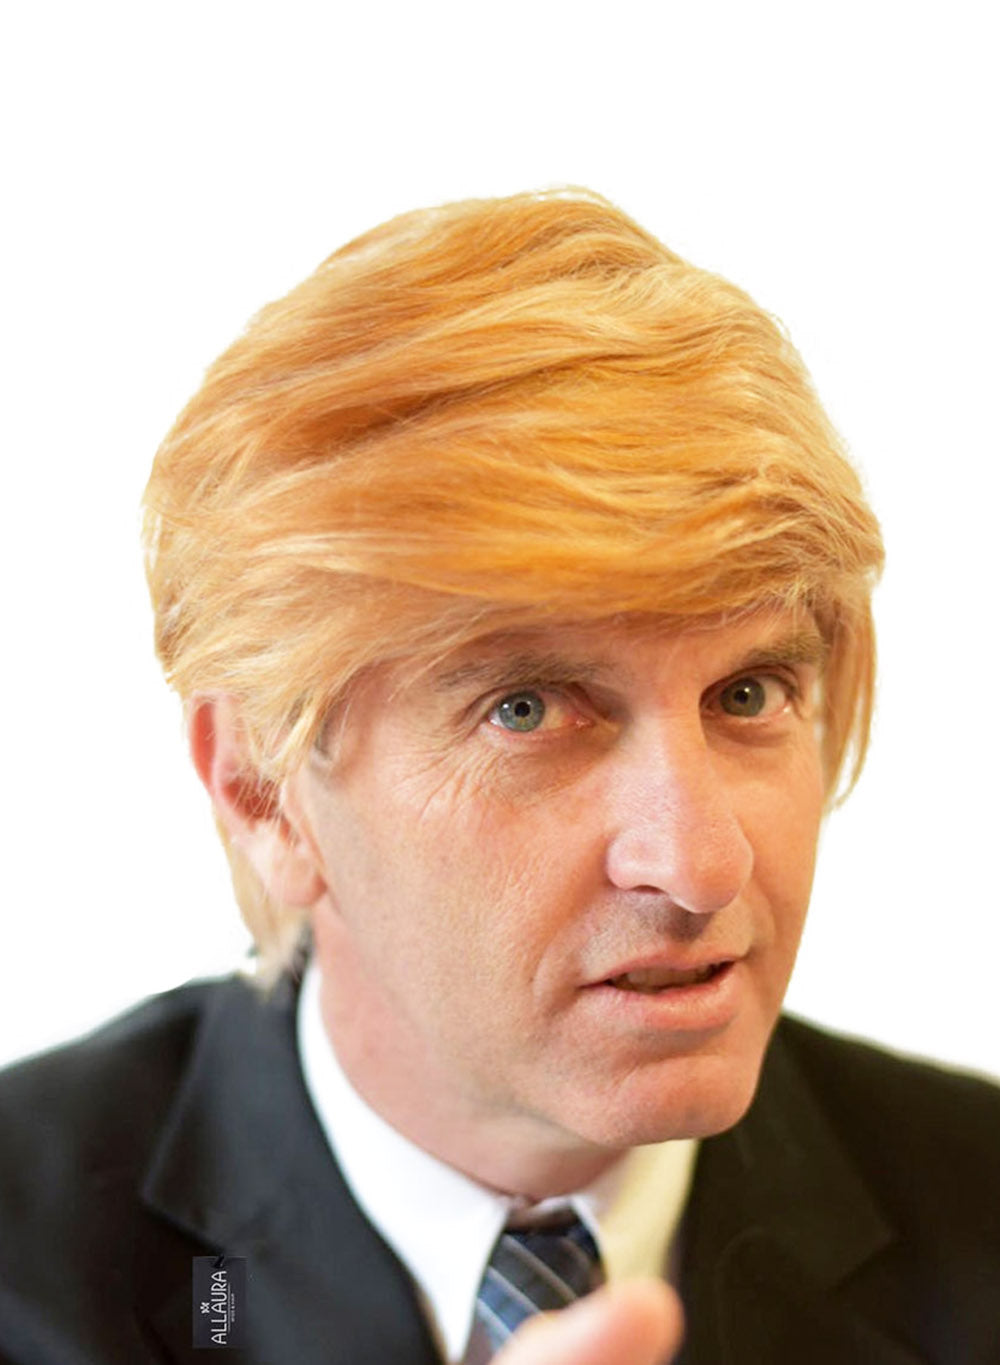 Funny Donald Trump Wig